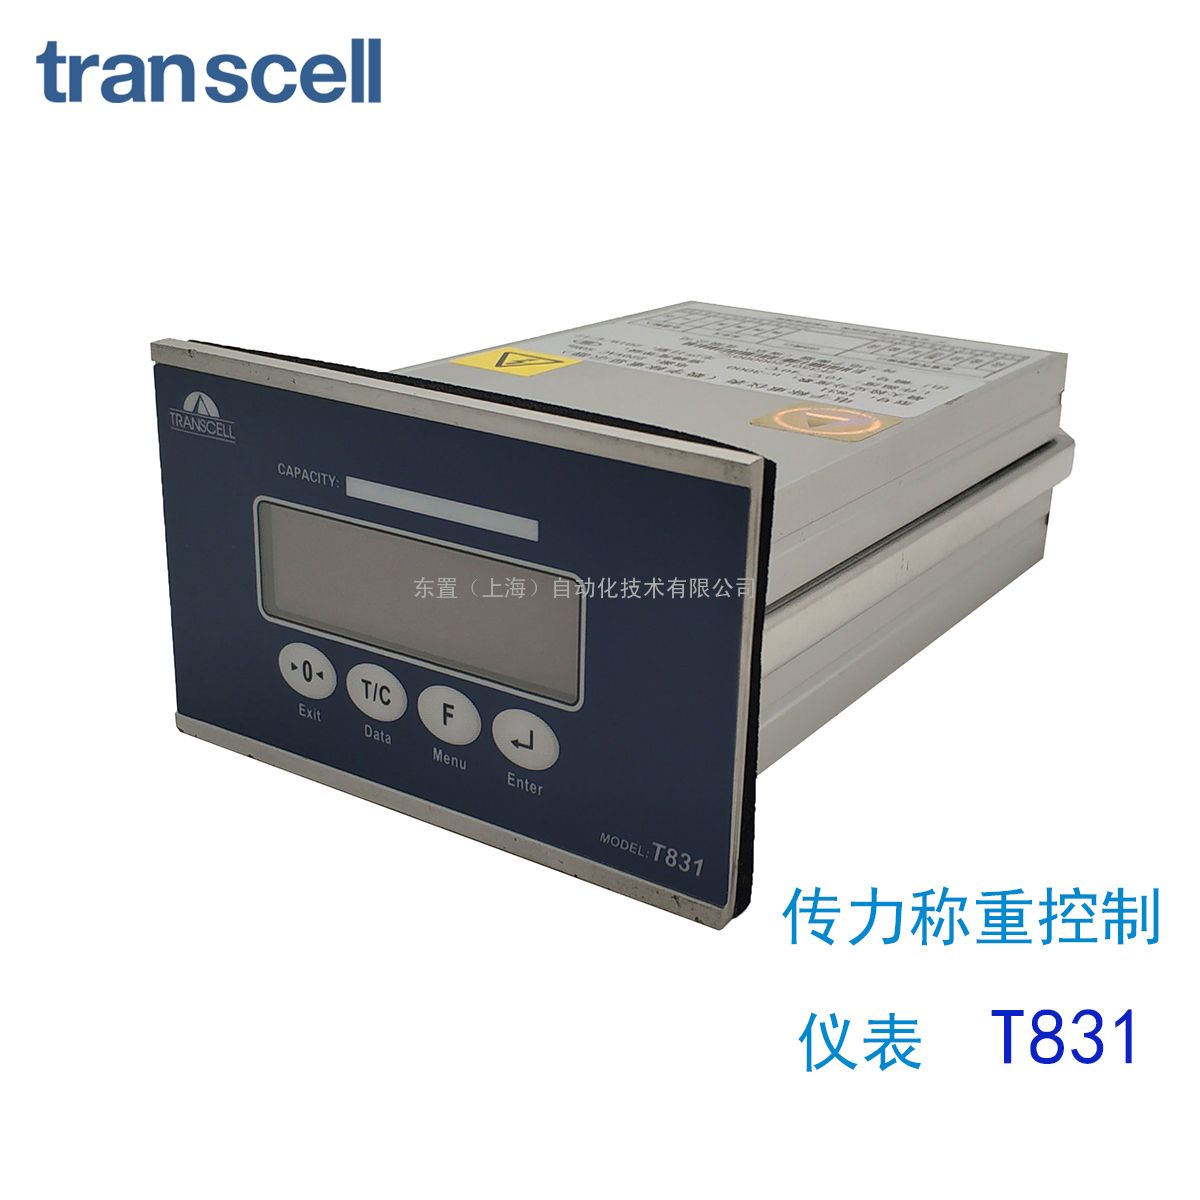  transcelltranscell  ؿǱ ҵն ؿT831